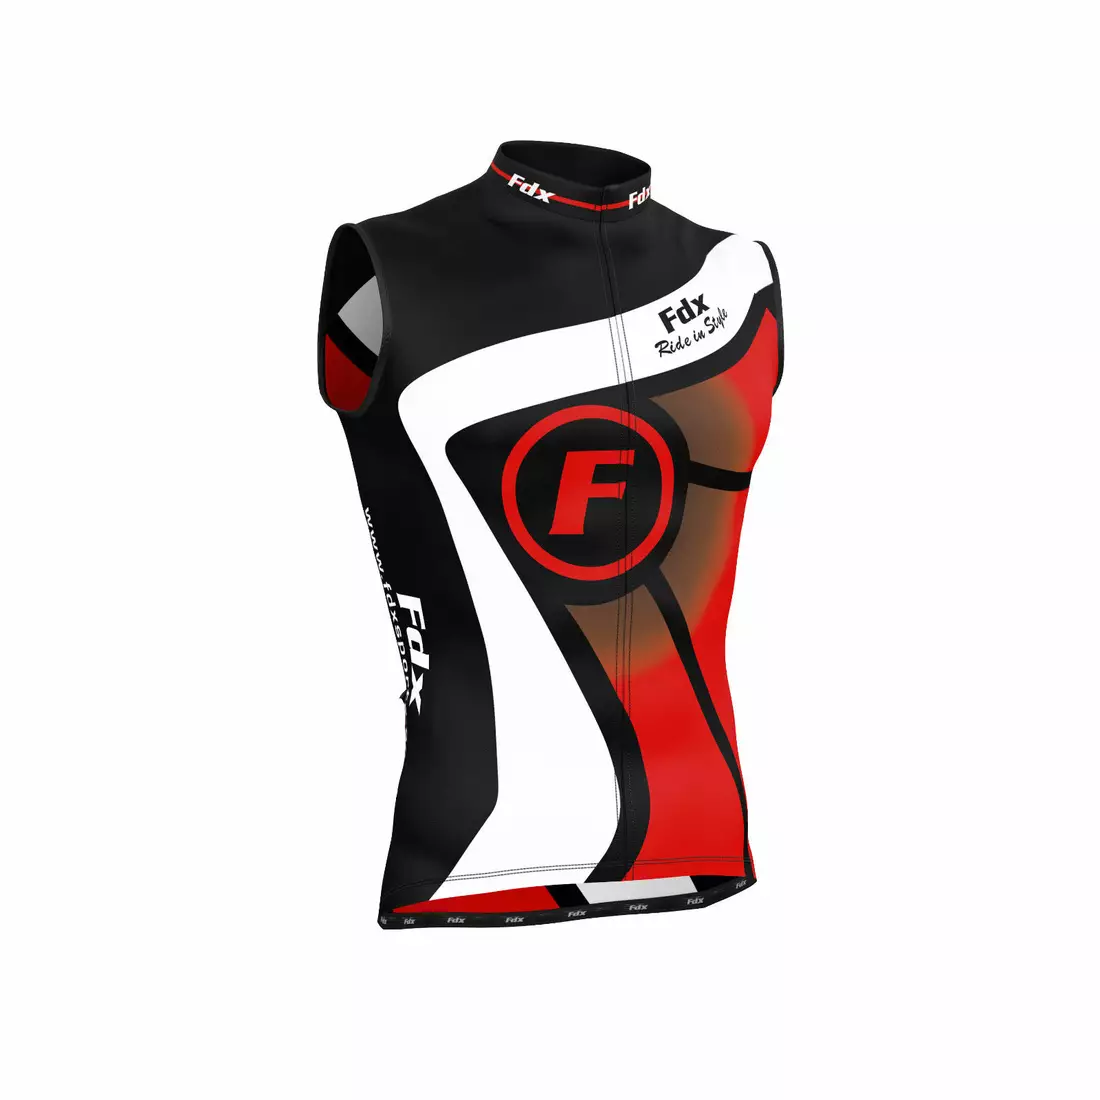 FDX 1020 pánsky cyklistický dres bez rukávov, čierny a červený